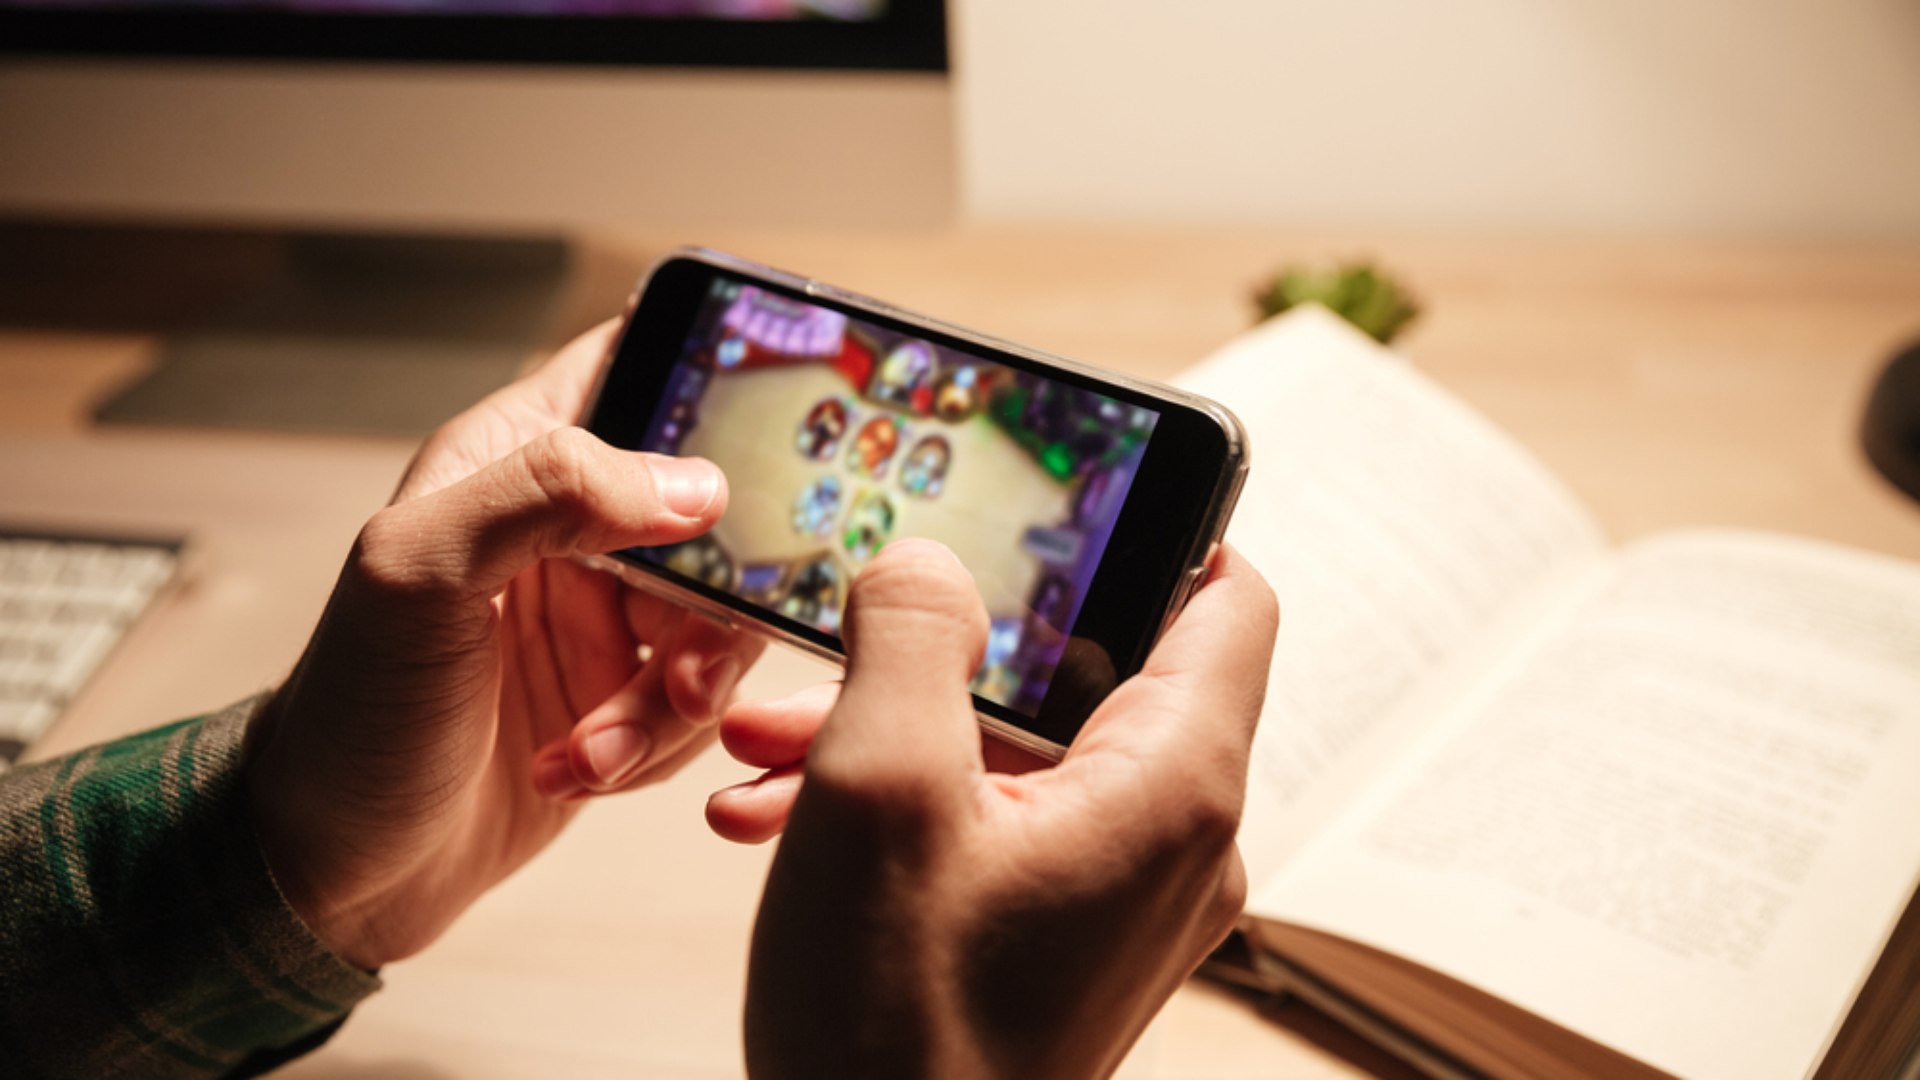 Os jogos mais populares para celular - Notícias - BOL